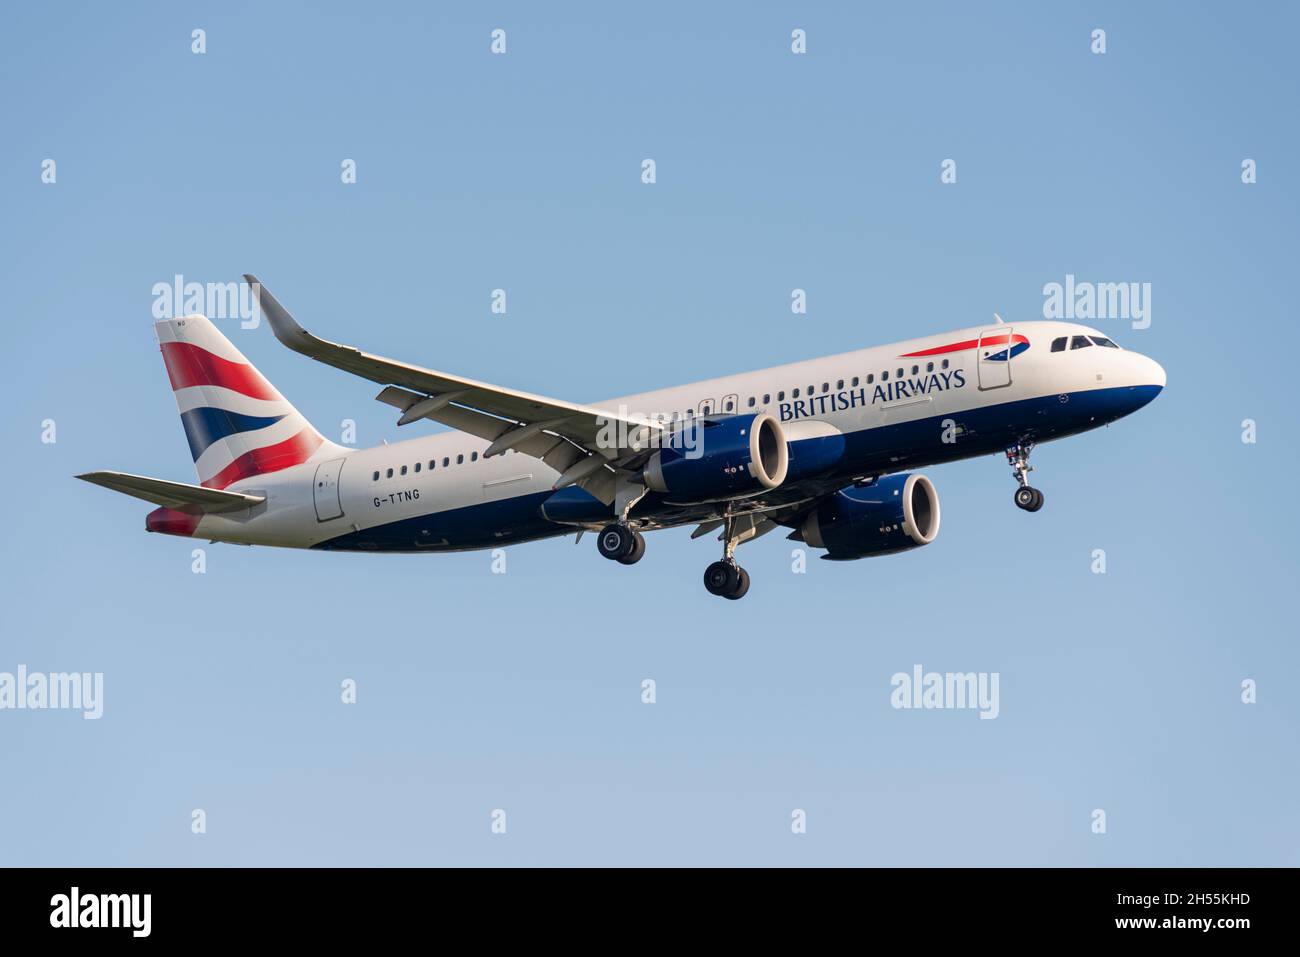 British Airways Airbus A320 NEO Airliner-Düsenflugzeug G-TTNG bei der Landung am Flughafen London Heathrow, Großbritannien. Stockfoto